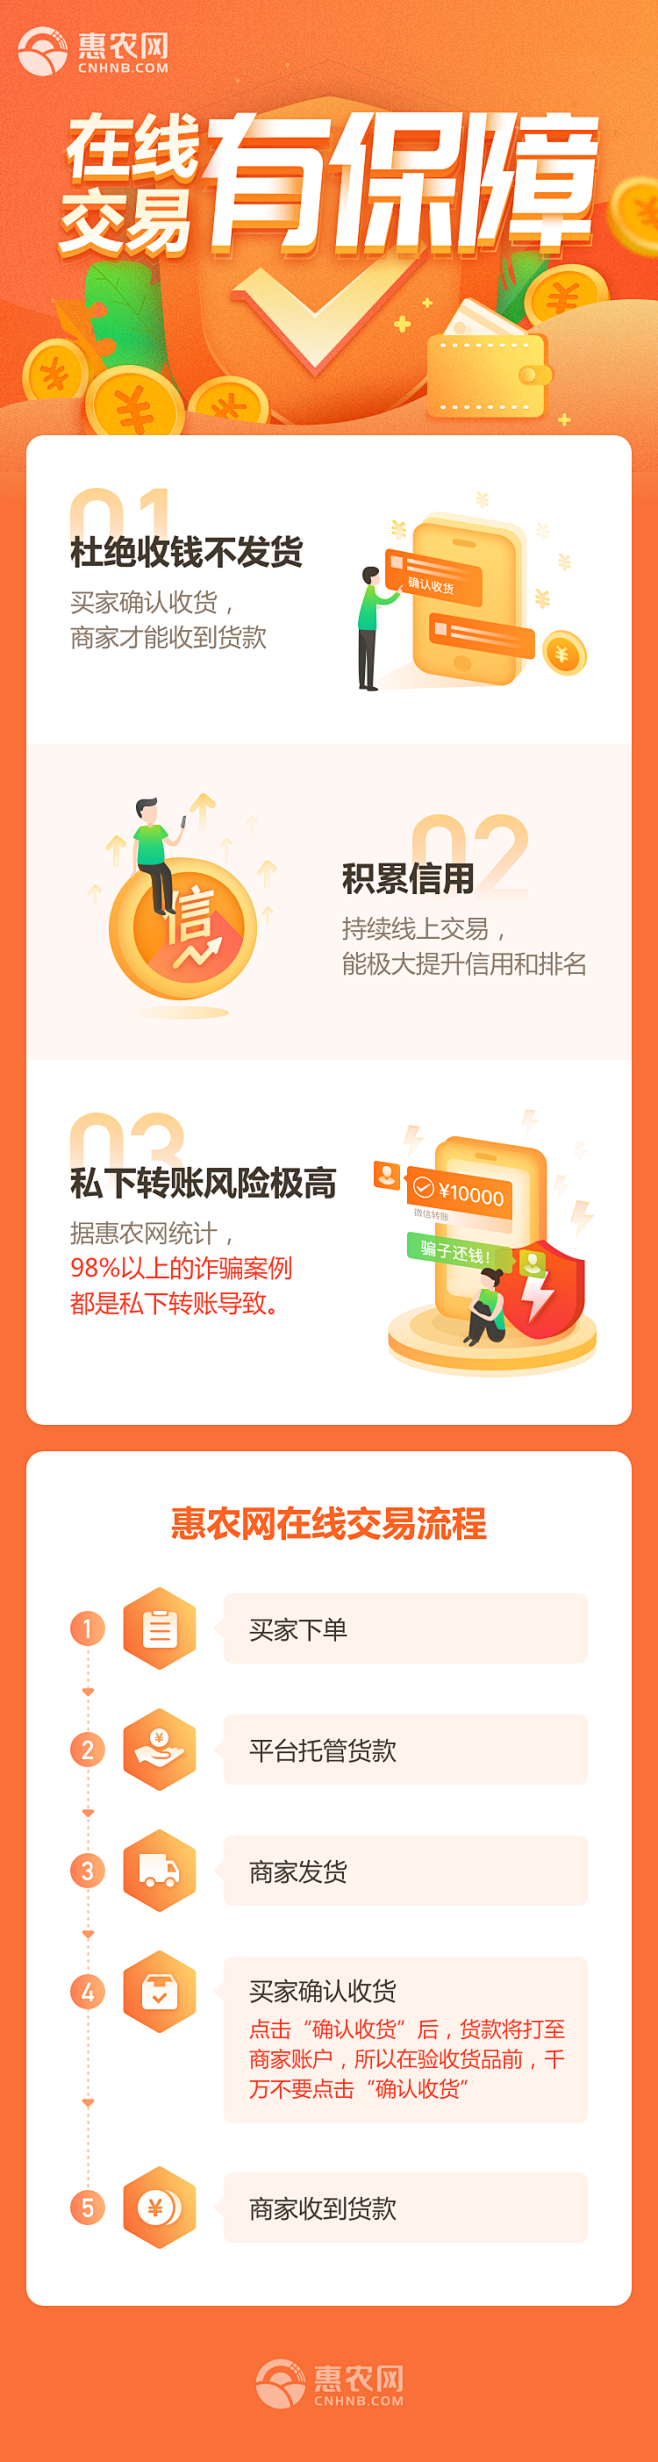 惠农网-在线交易有保障-专题活动设计-@...